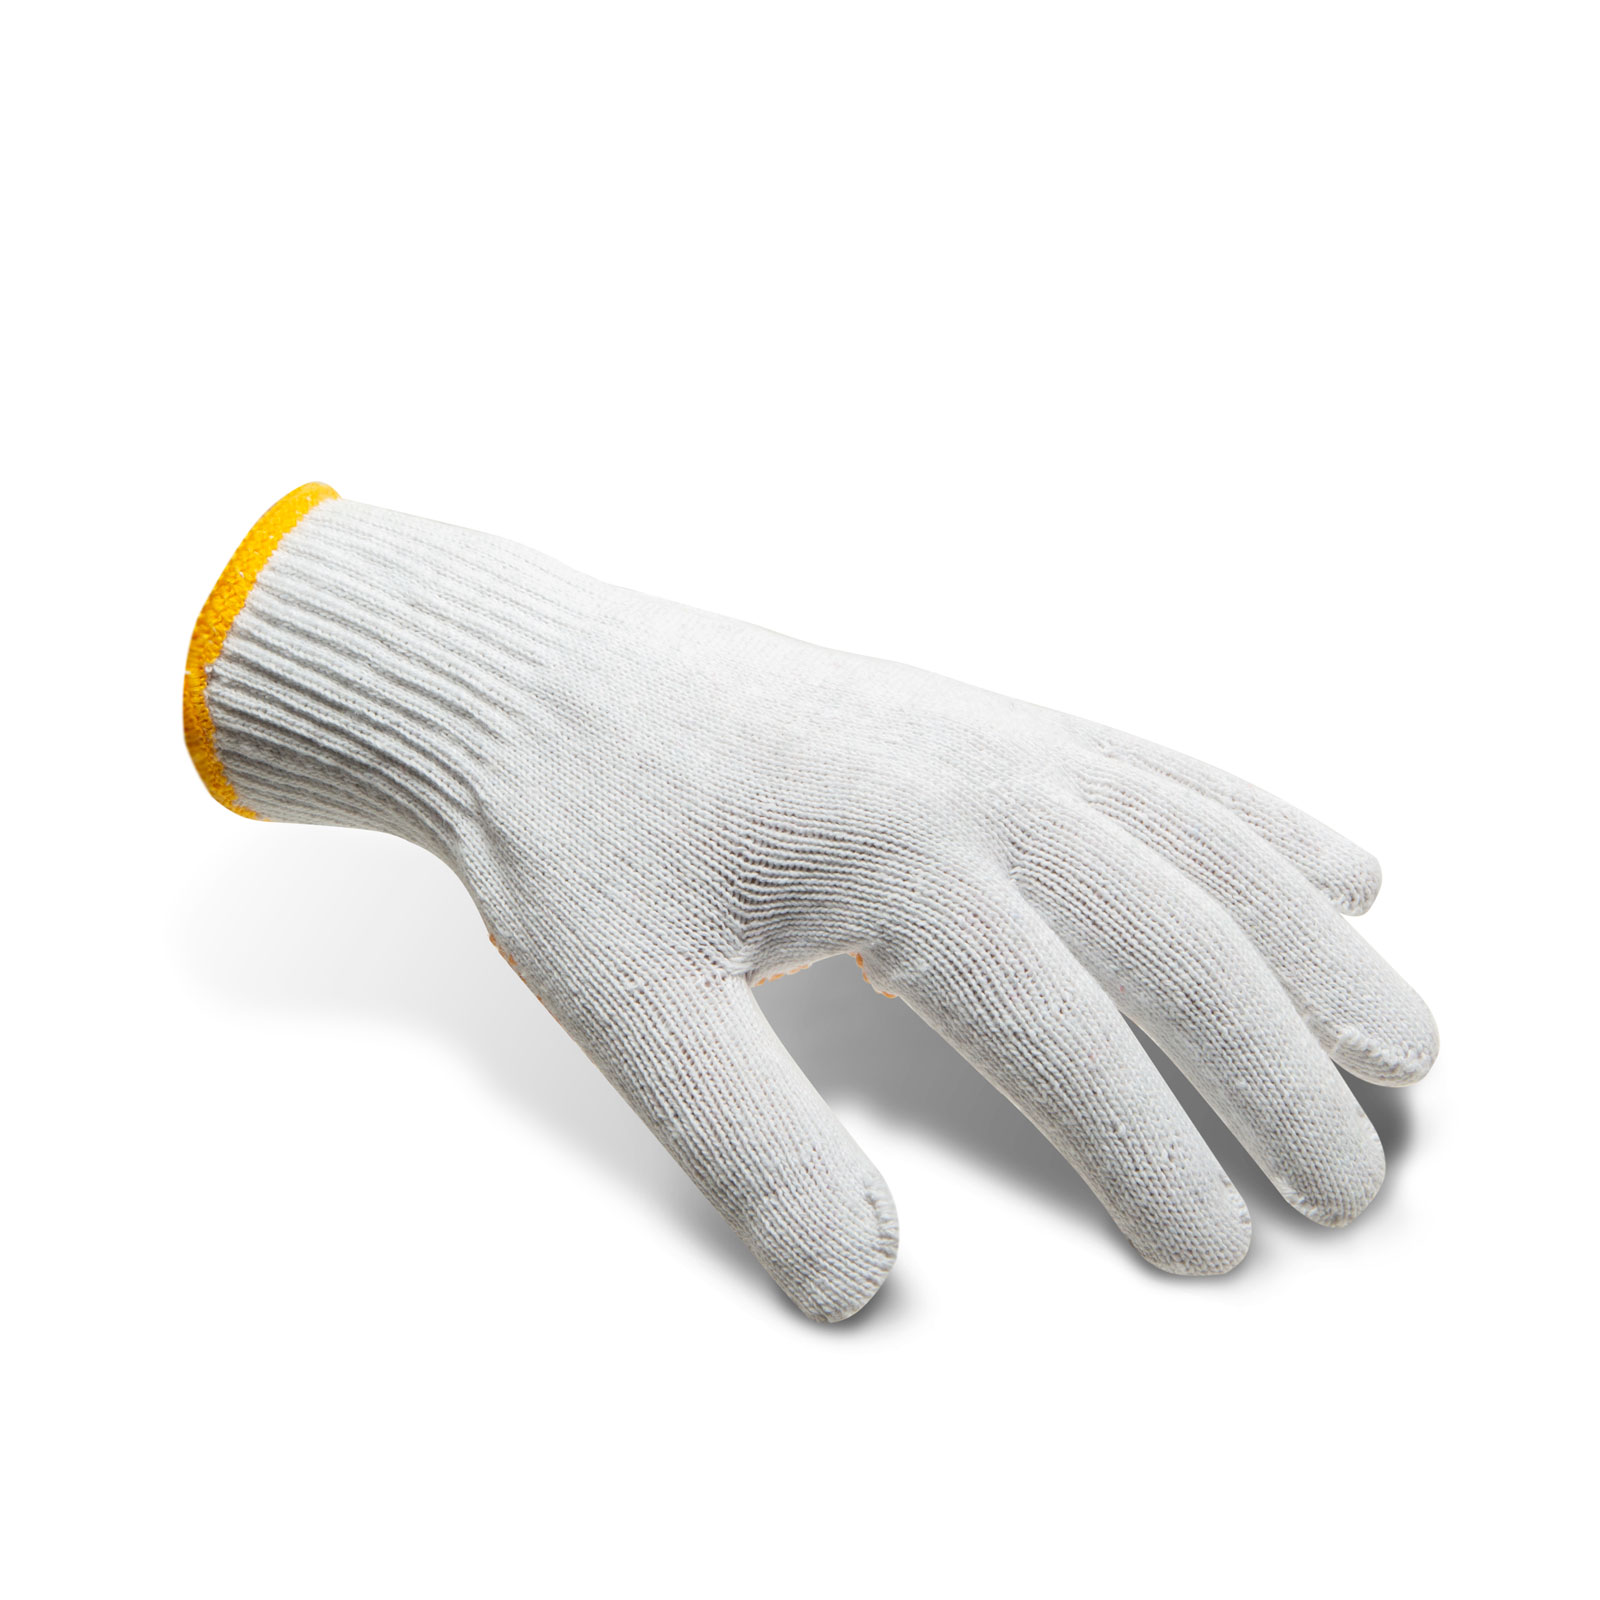 Knitwrist Non-Slip Cotton Gloves thumb